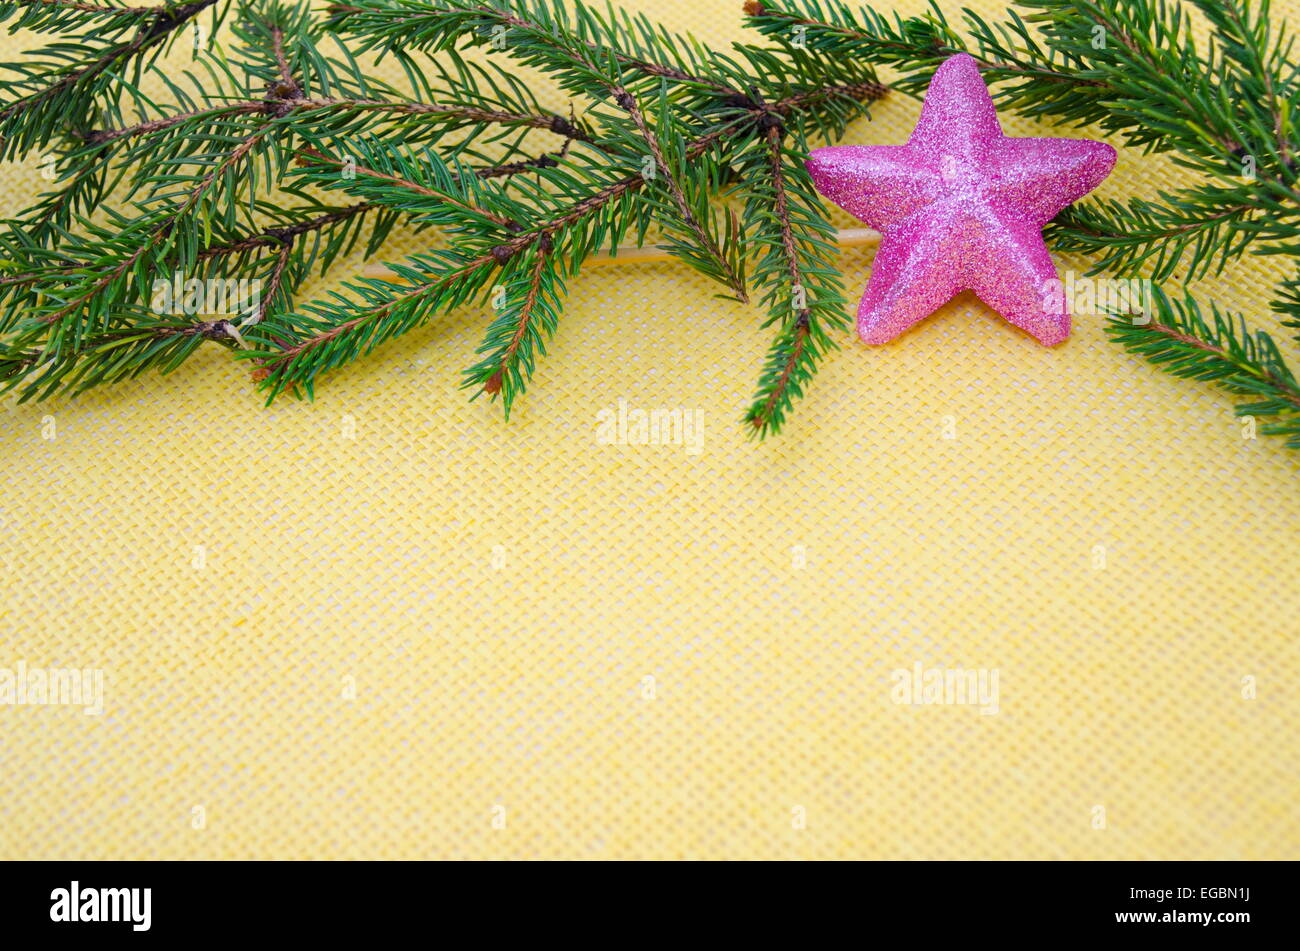 Brillant et Rose star ornament avec branches sur une nappe jaune Banque D'Images